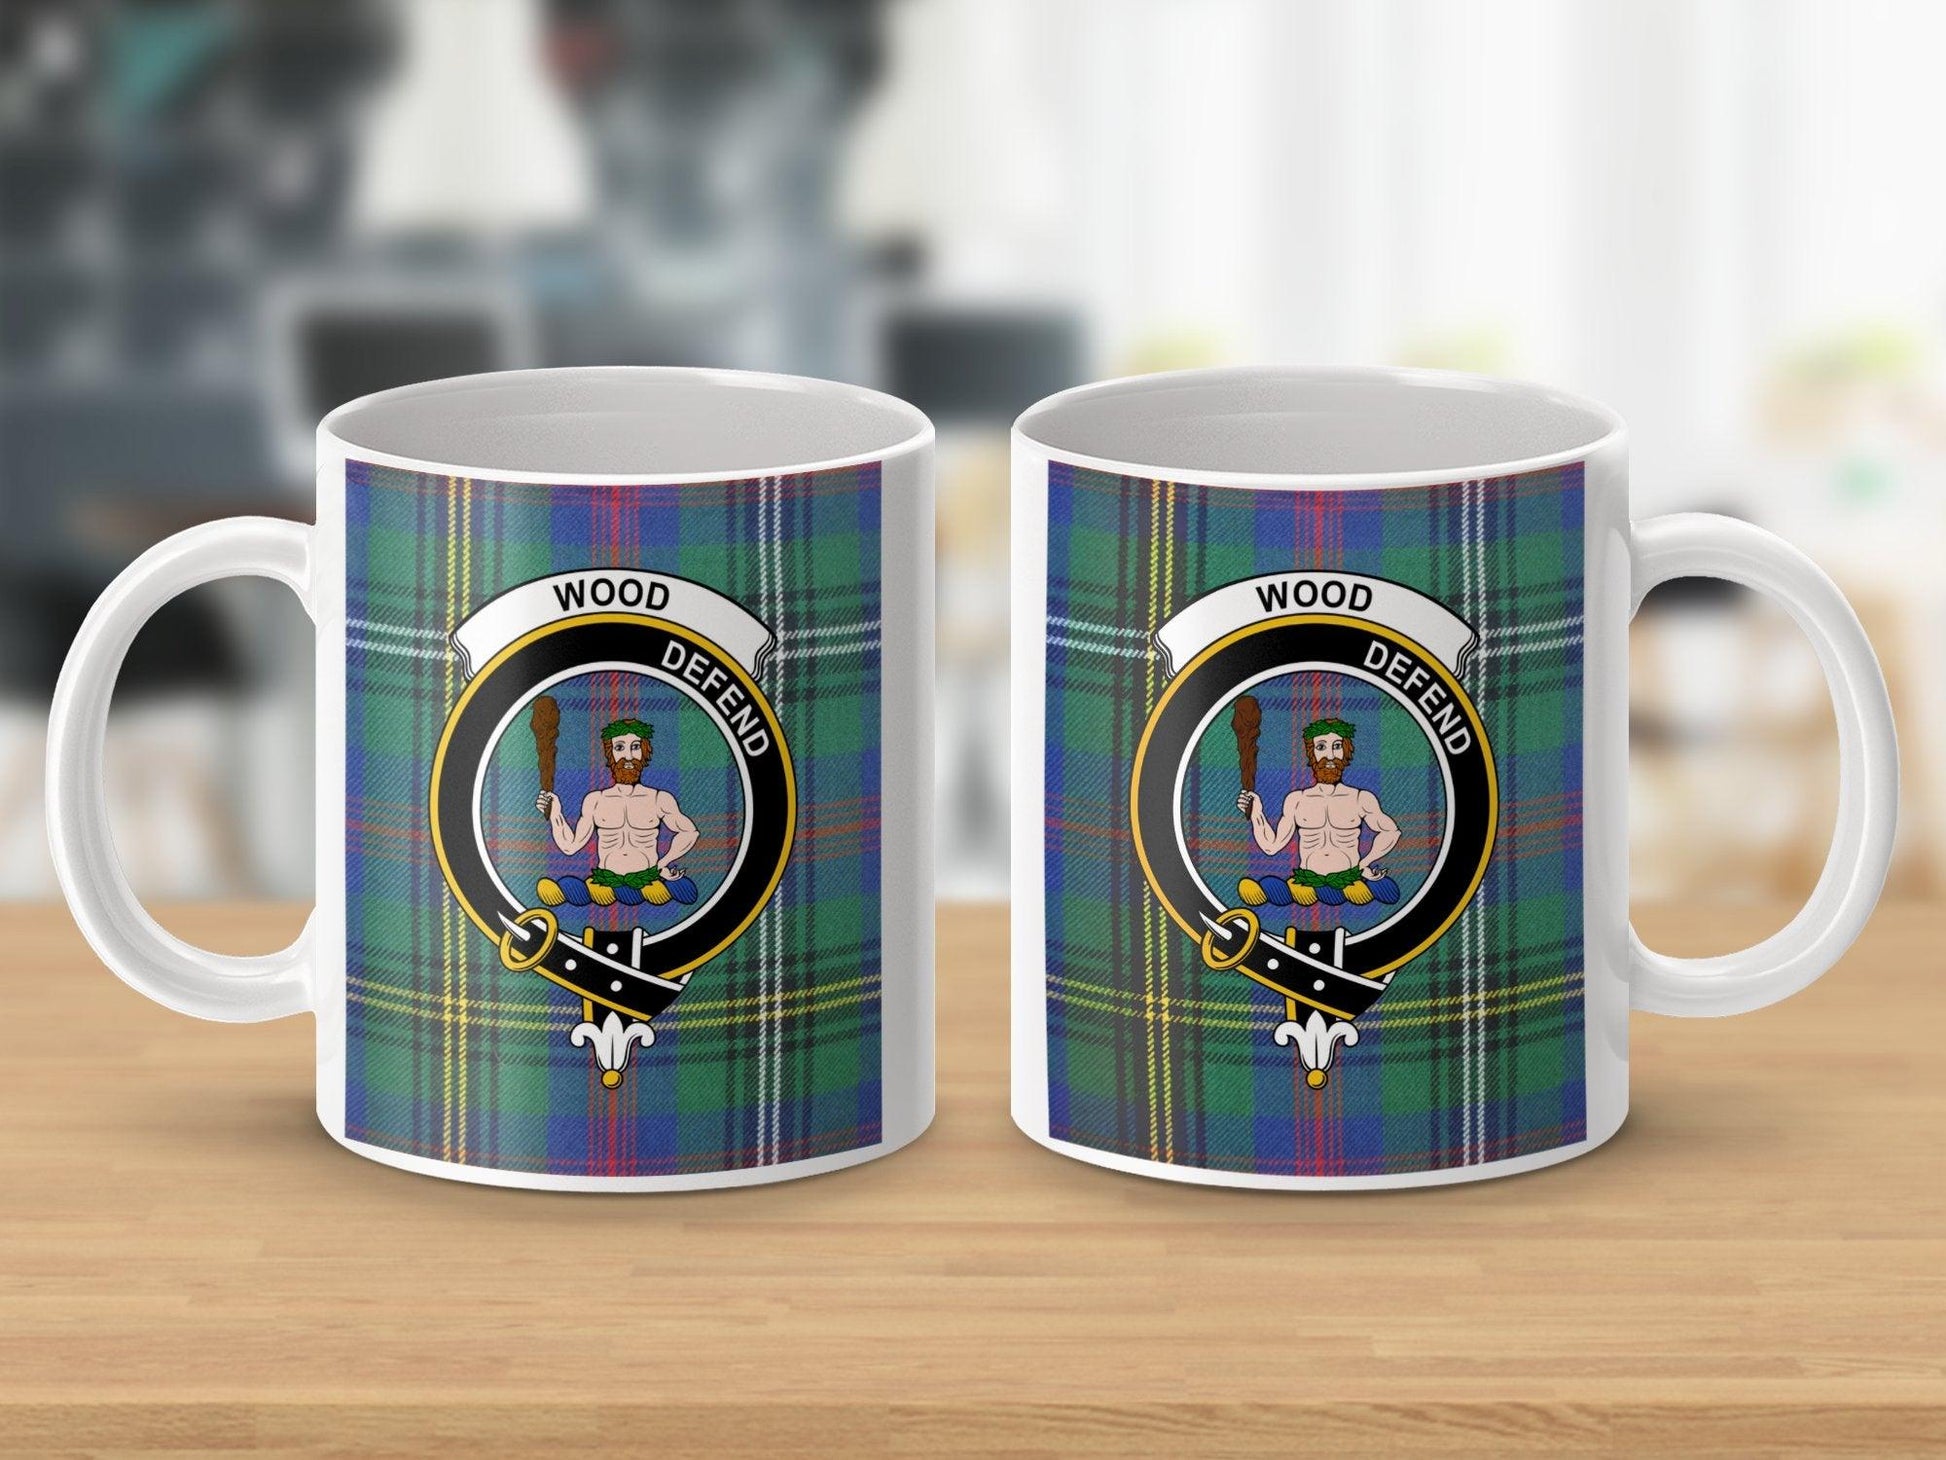 Wood Scottish Clan Crest Gatherings Tartan Mug - Living Stone Gifts